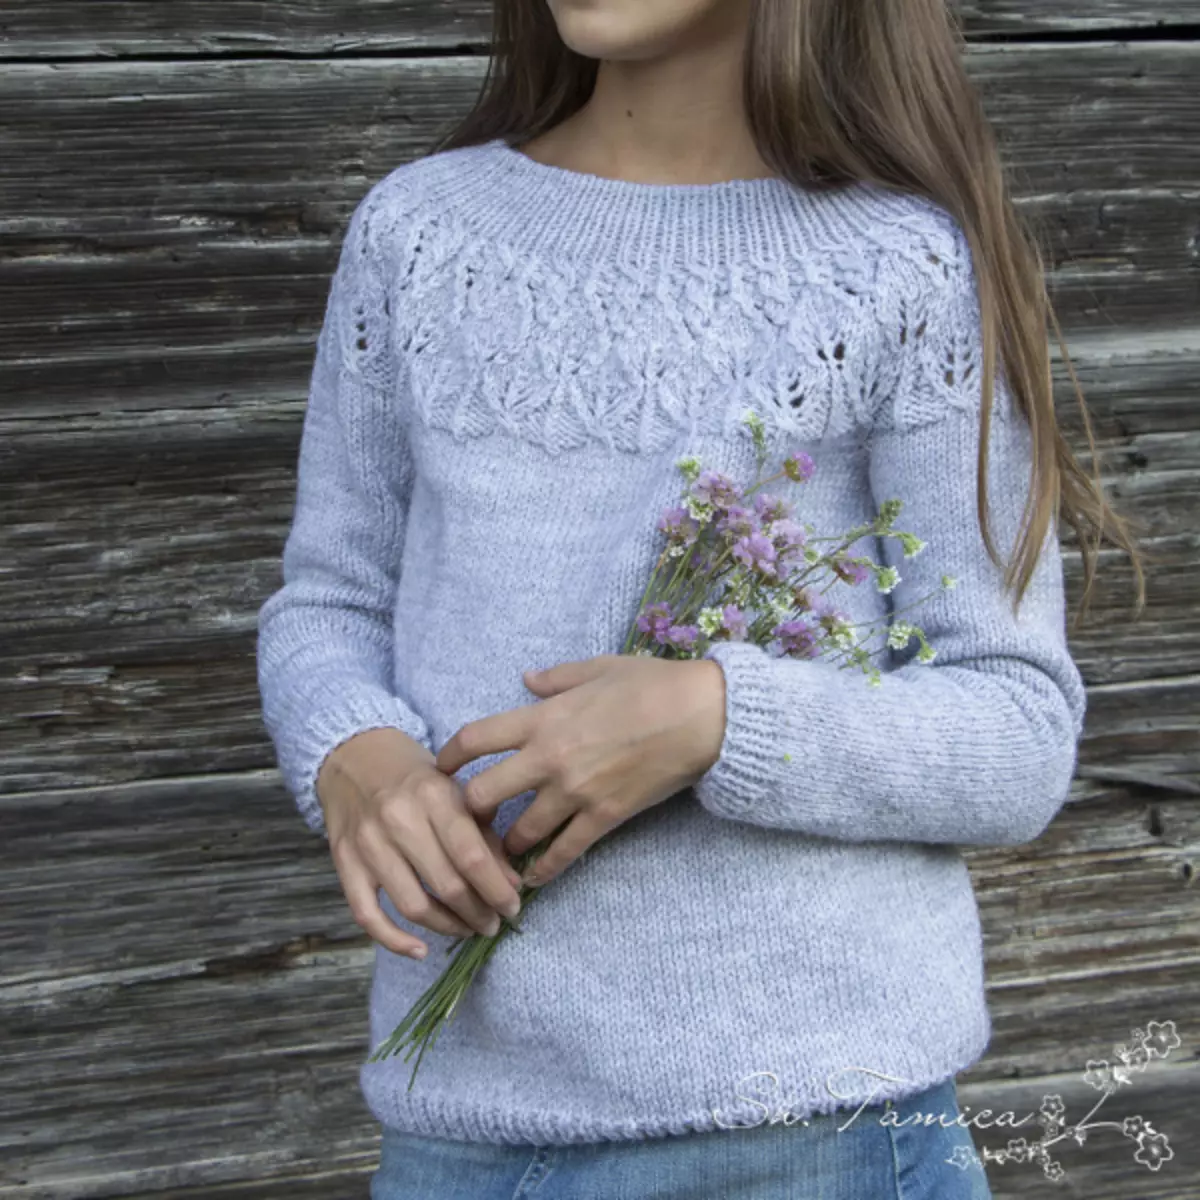 Ronde Coquette met breinaalden: turquoise truien voor een meisje